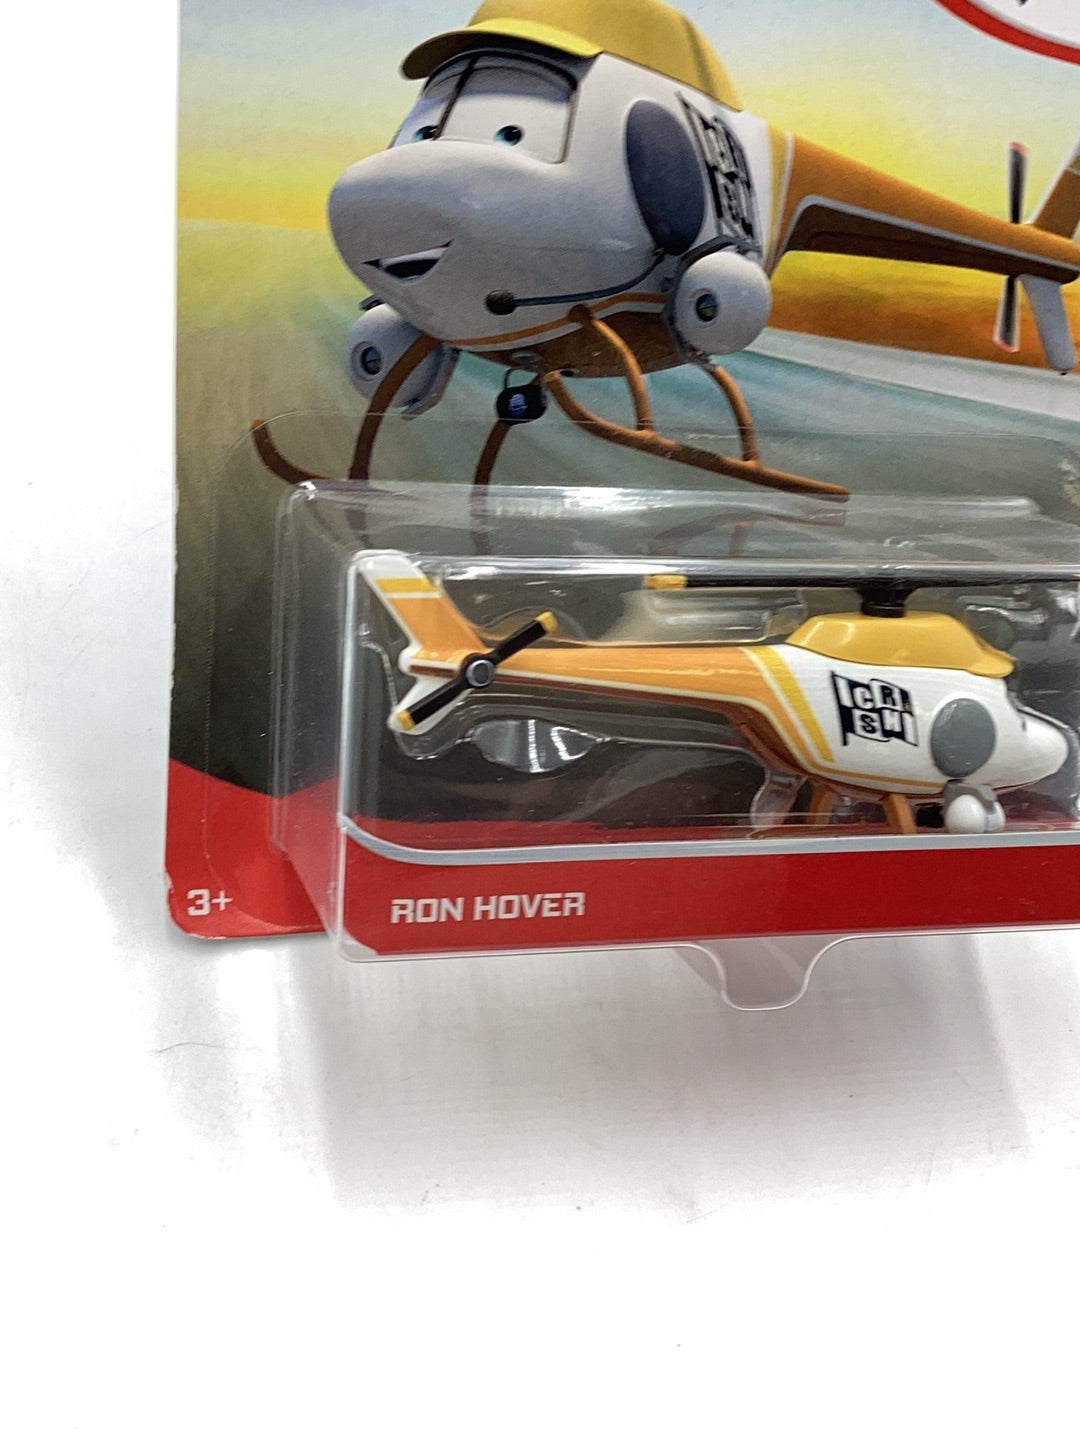 Disney Pixar Cars Ron Hover 142D